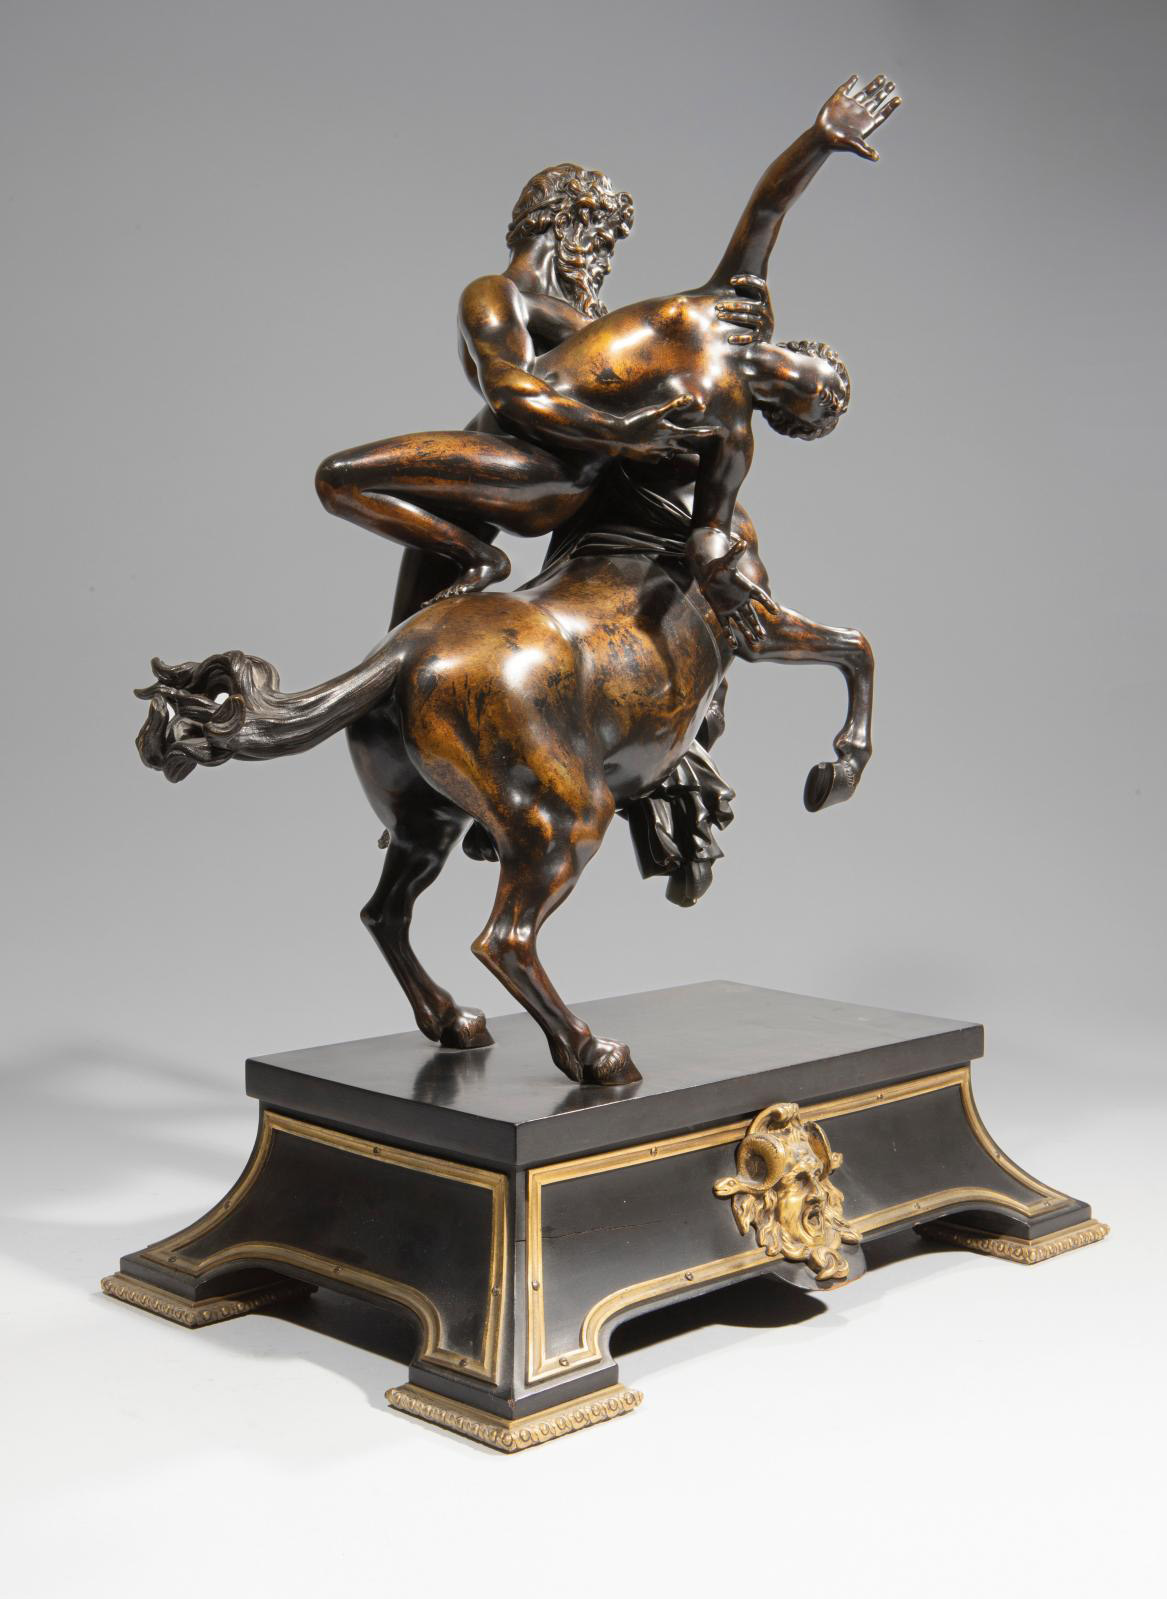 Nessus and Deianira: An Italian-Inspired Bronze